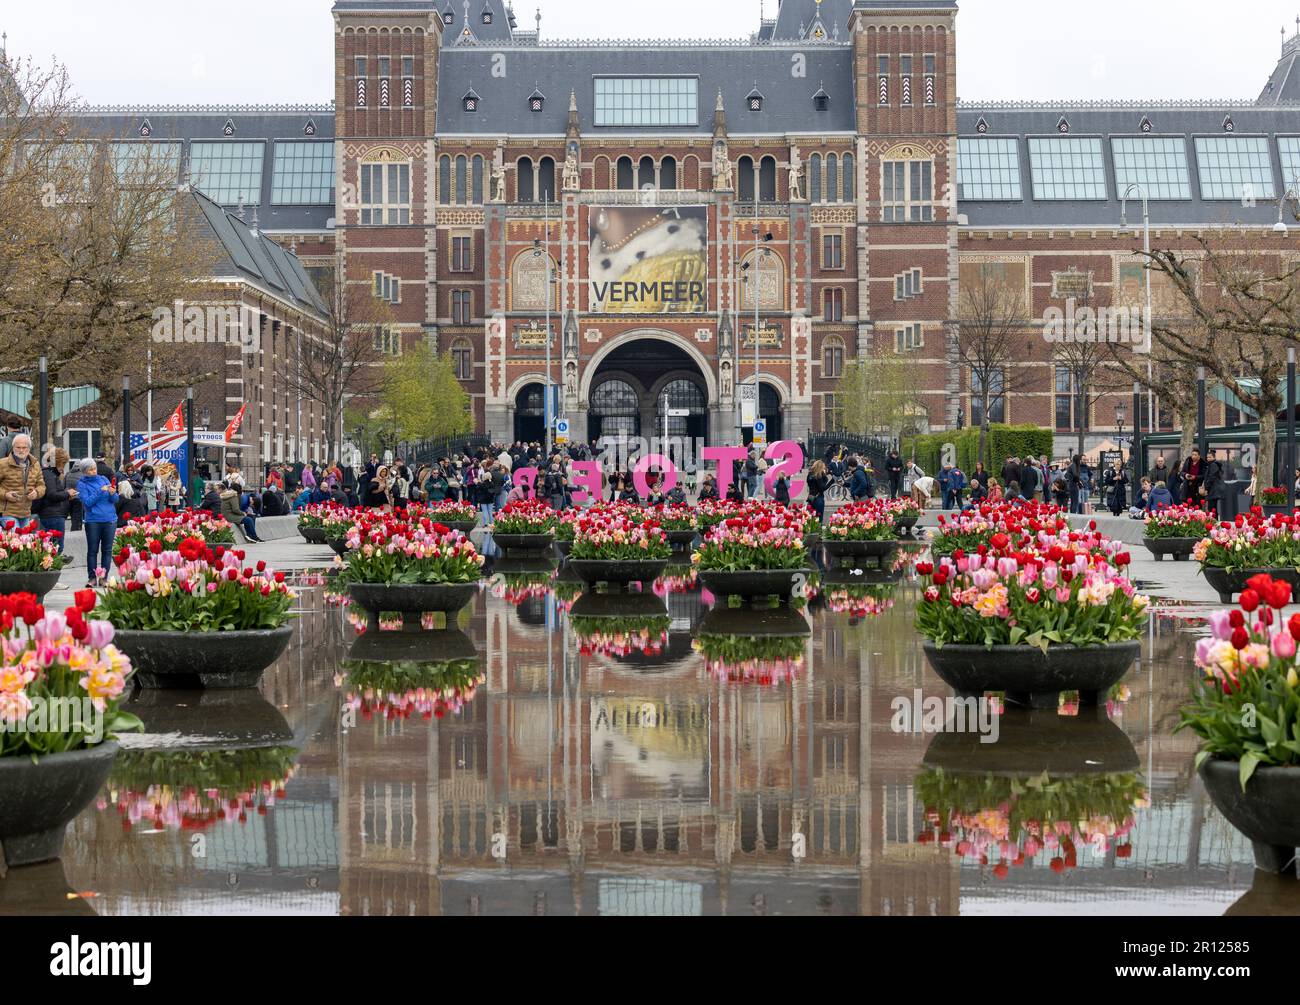 Amsterdam, pays-Bas - 21 avril 2023: Le Rijksmuseum à Amsterdam - la plus grande exposition sur le peintre néerlandais Johannes Vermeer - présentant 28 de ses chefs-d'œuvre Banque D'Images